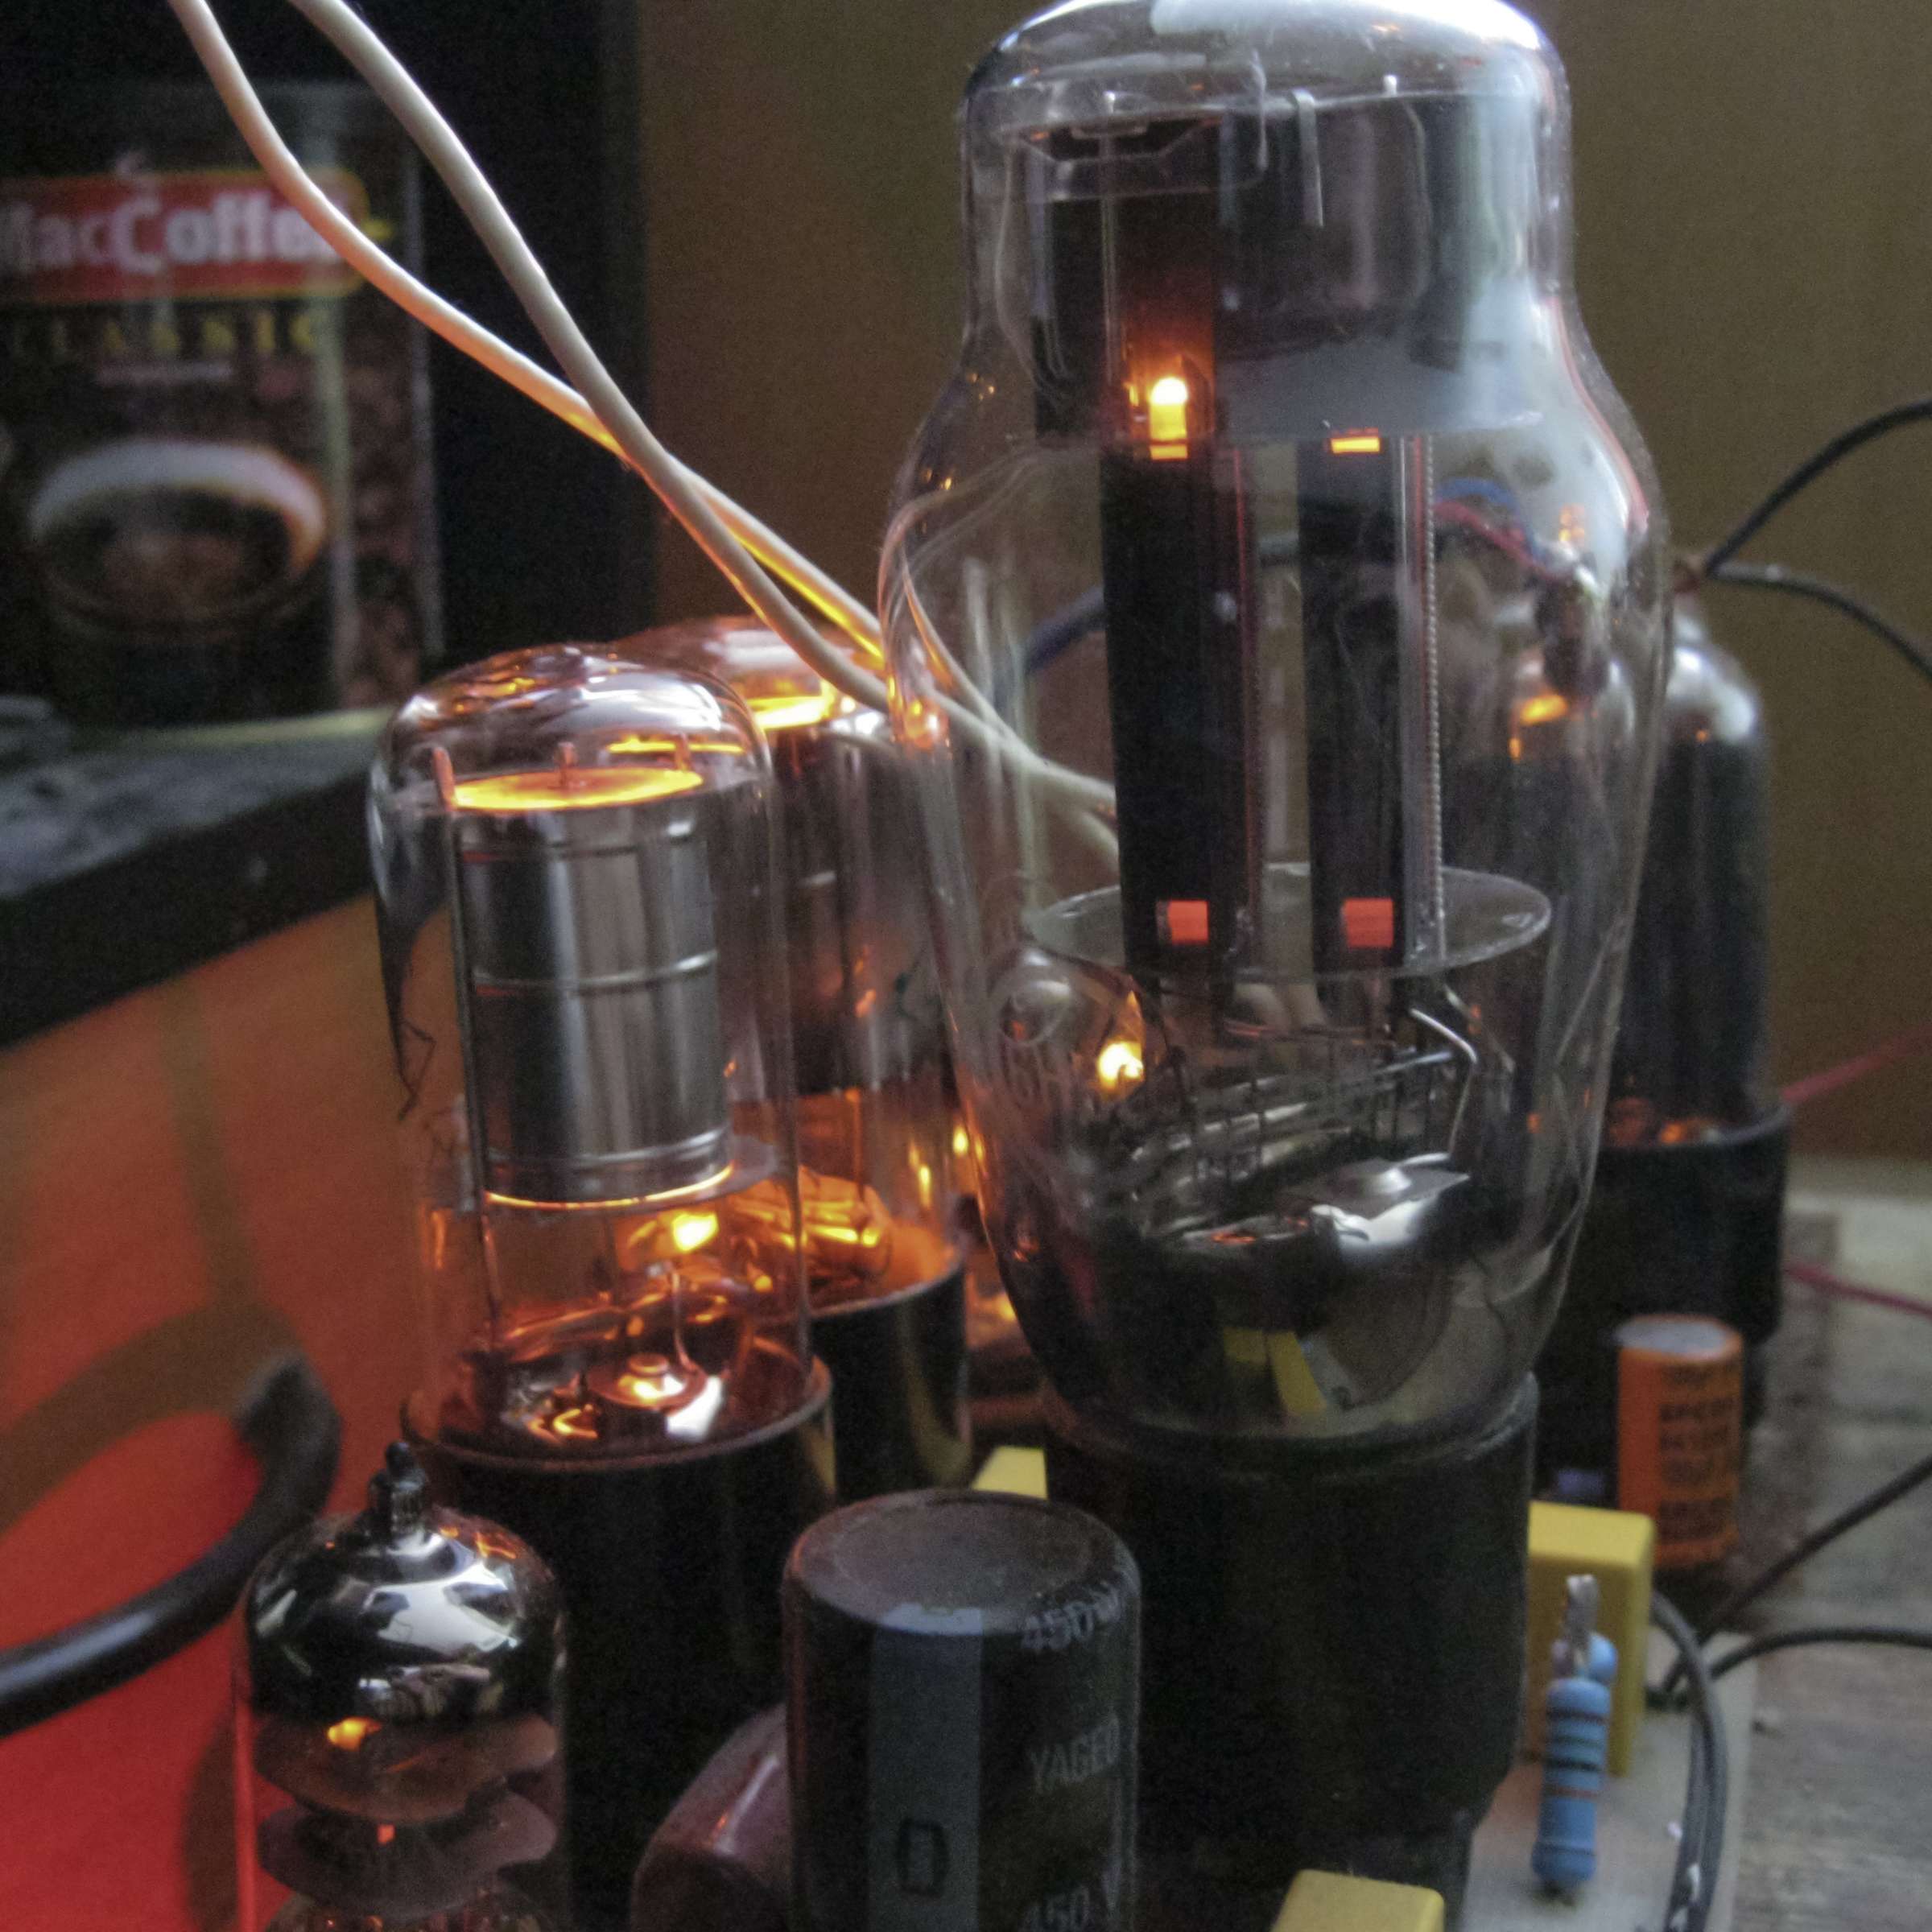 Унифицированный стабилизатор на лампах при проведении испытаний